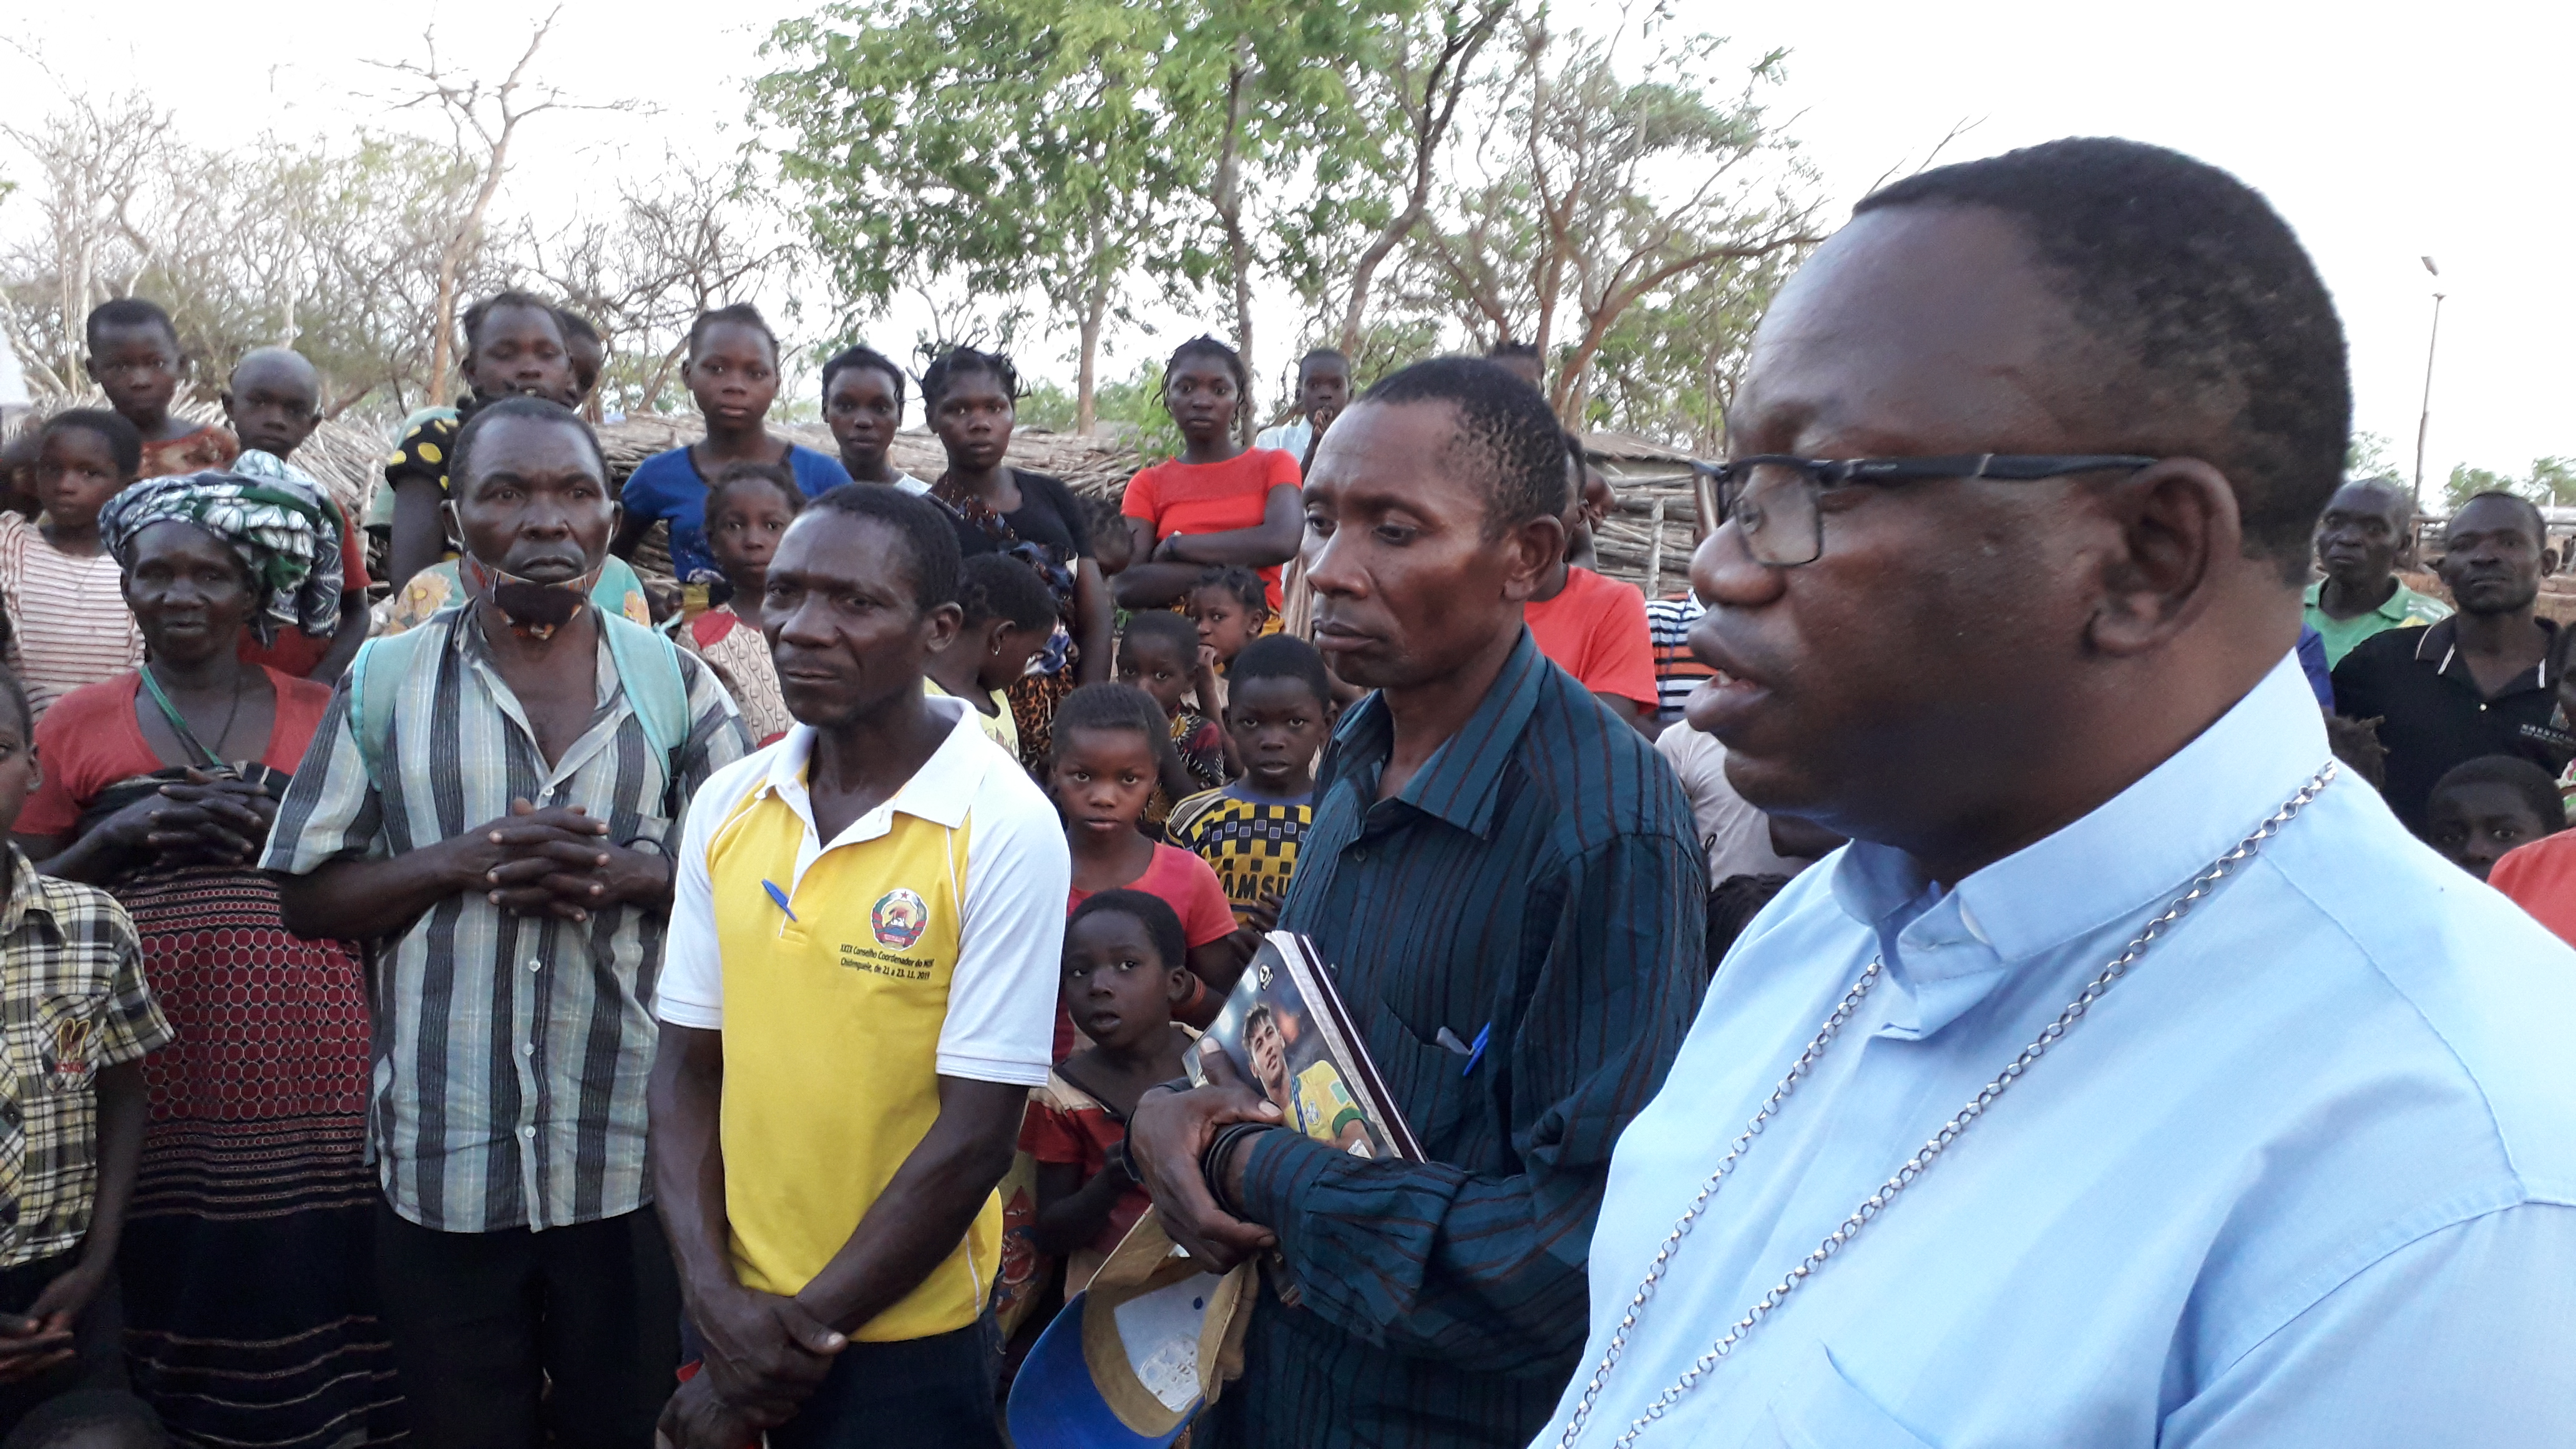 Terrorismo en Mozambique. La Iglesia quiere ser parte de la solución